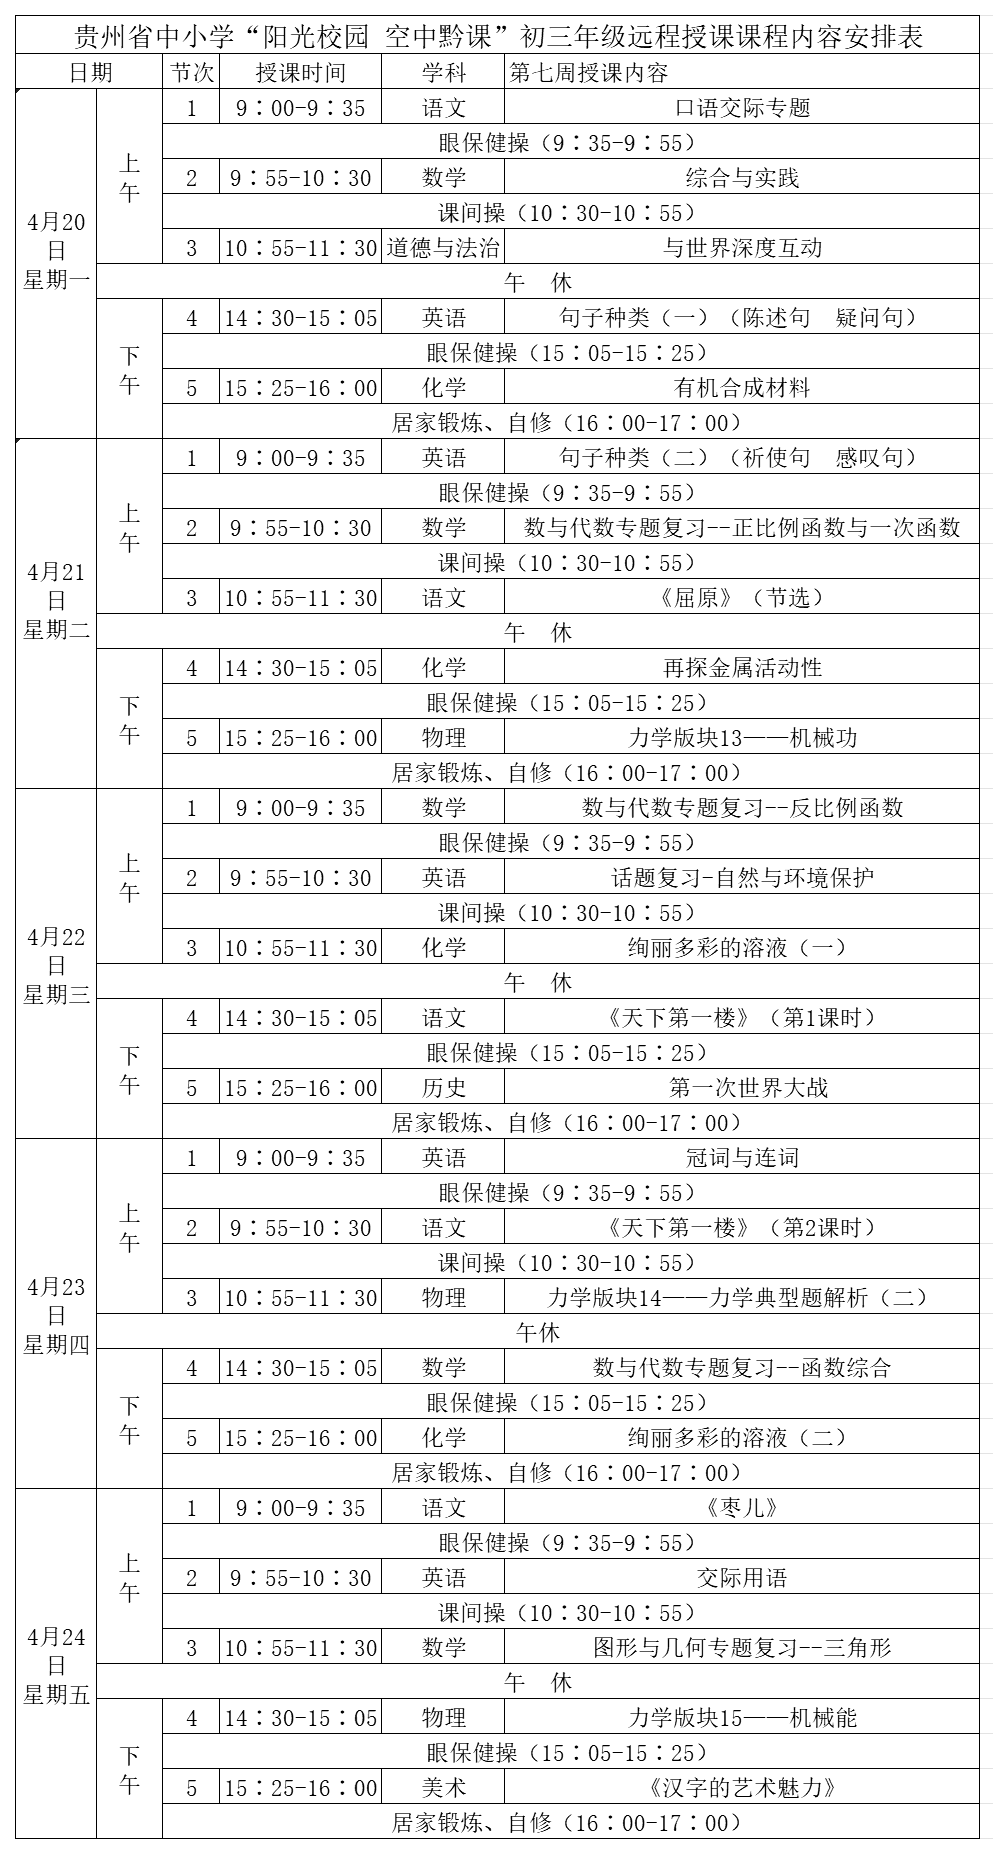 贵州中小学“空中课堂”课程表完整版公布（4月20日3